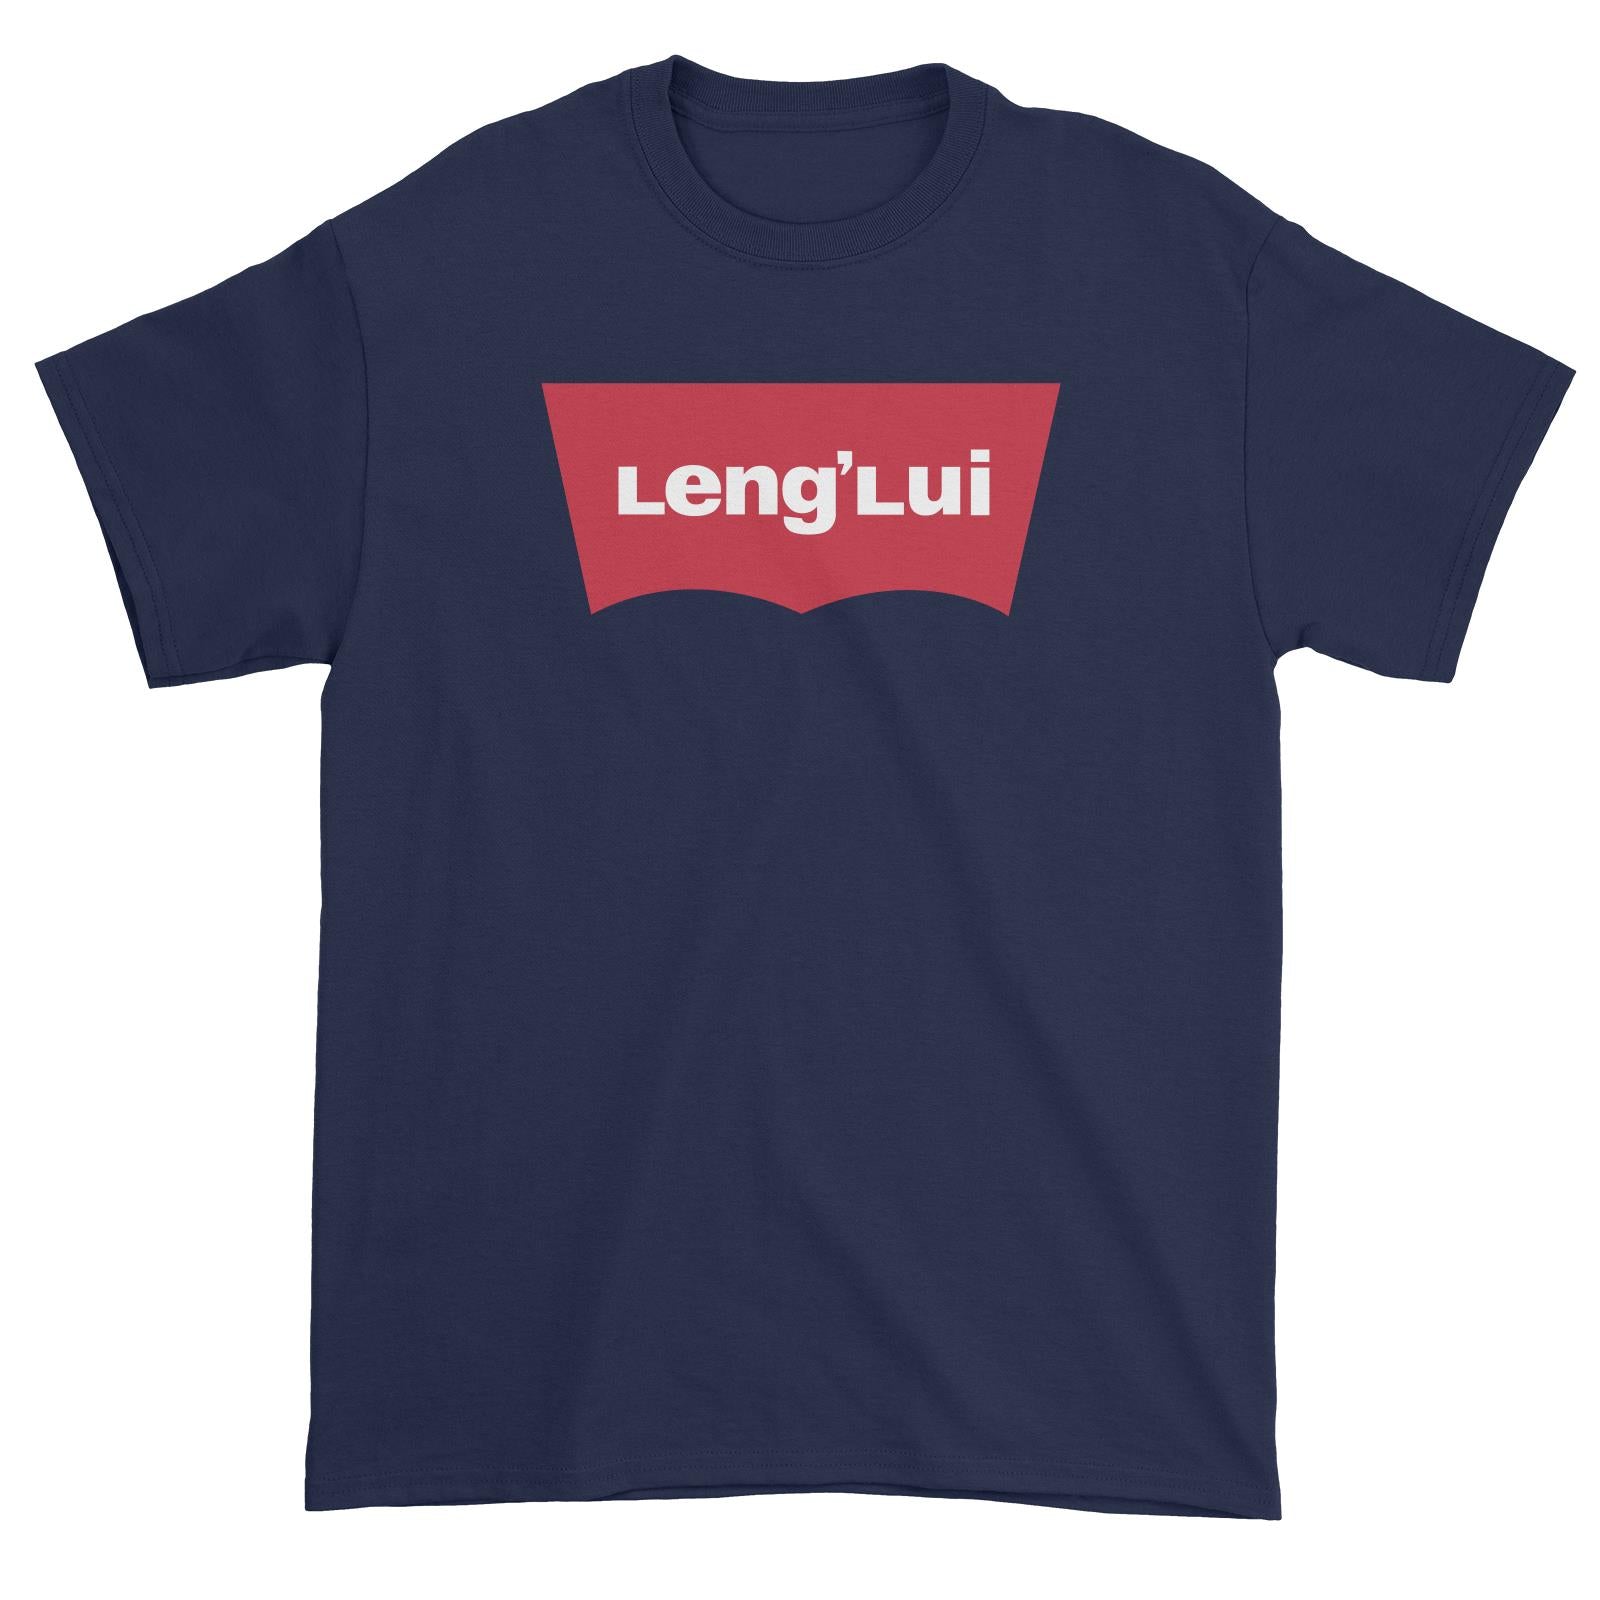 Slang Statement Lenglui Unisex T-Shirt